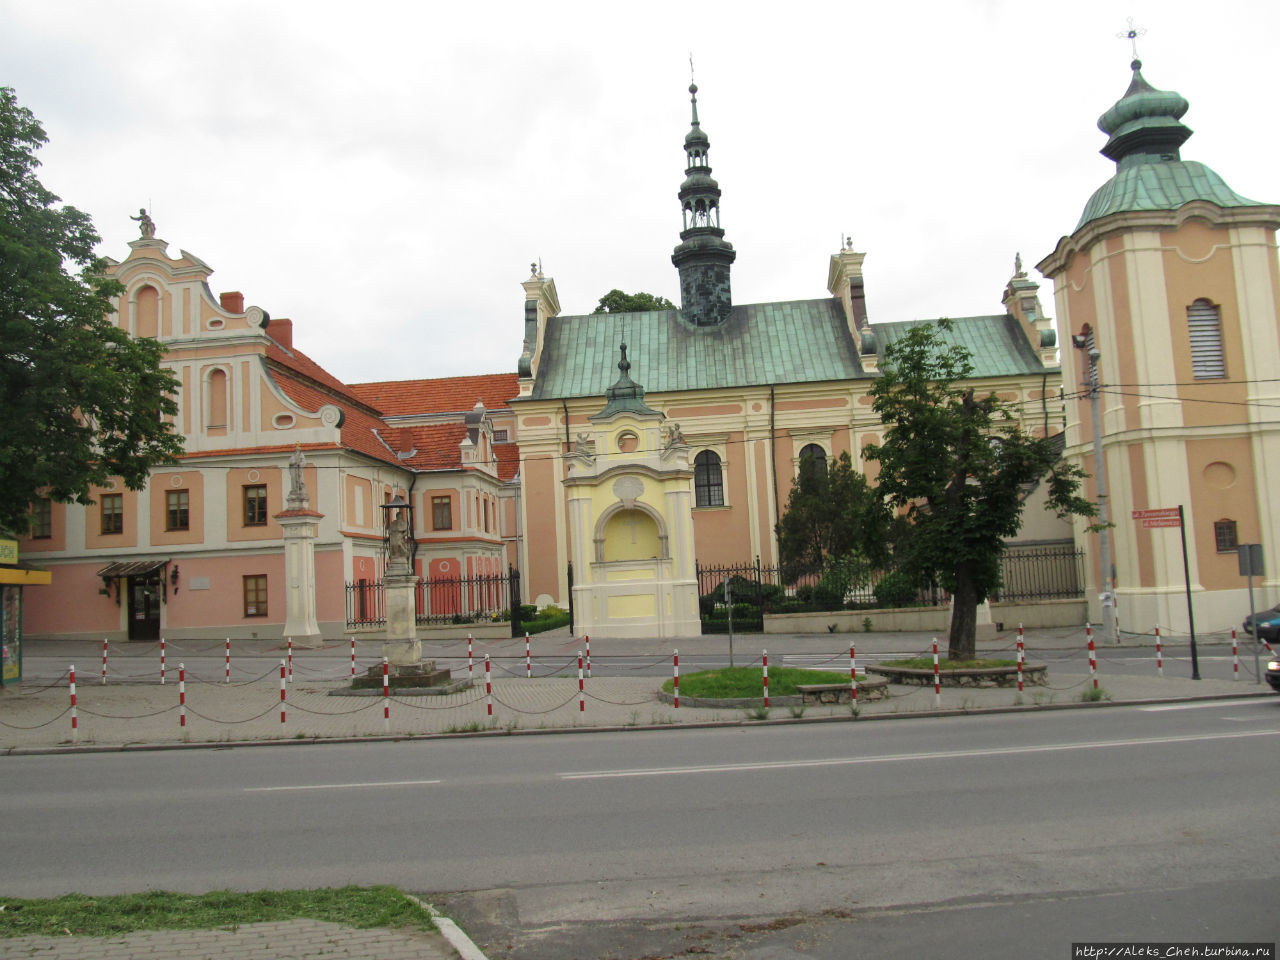 Привлекательность маленьких городов Сандомир, Польша